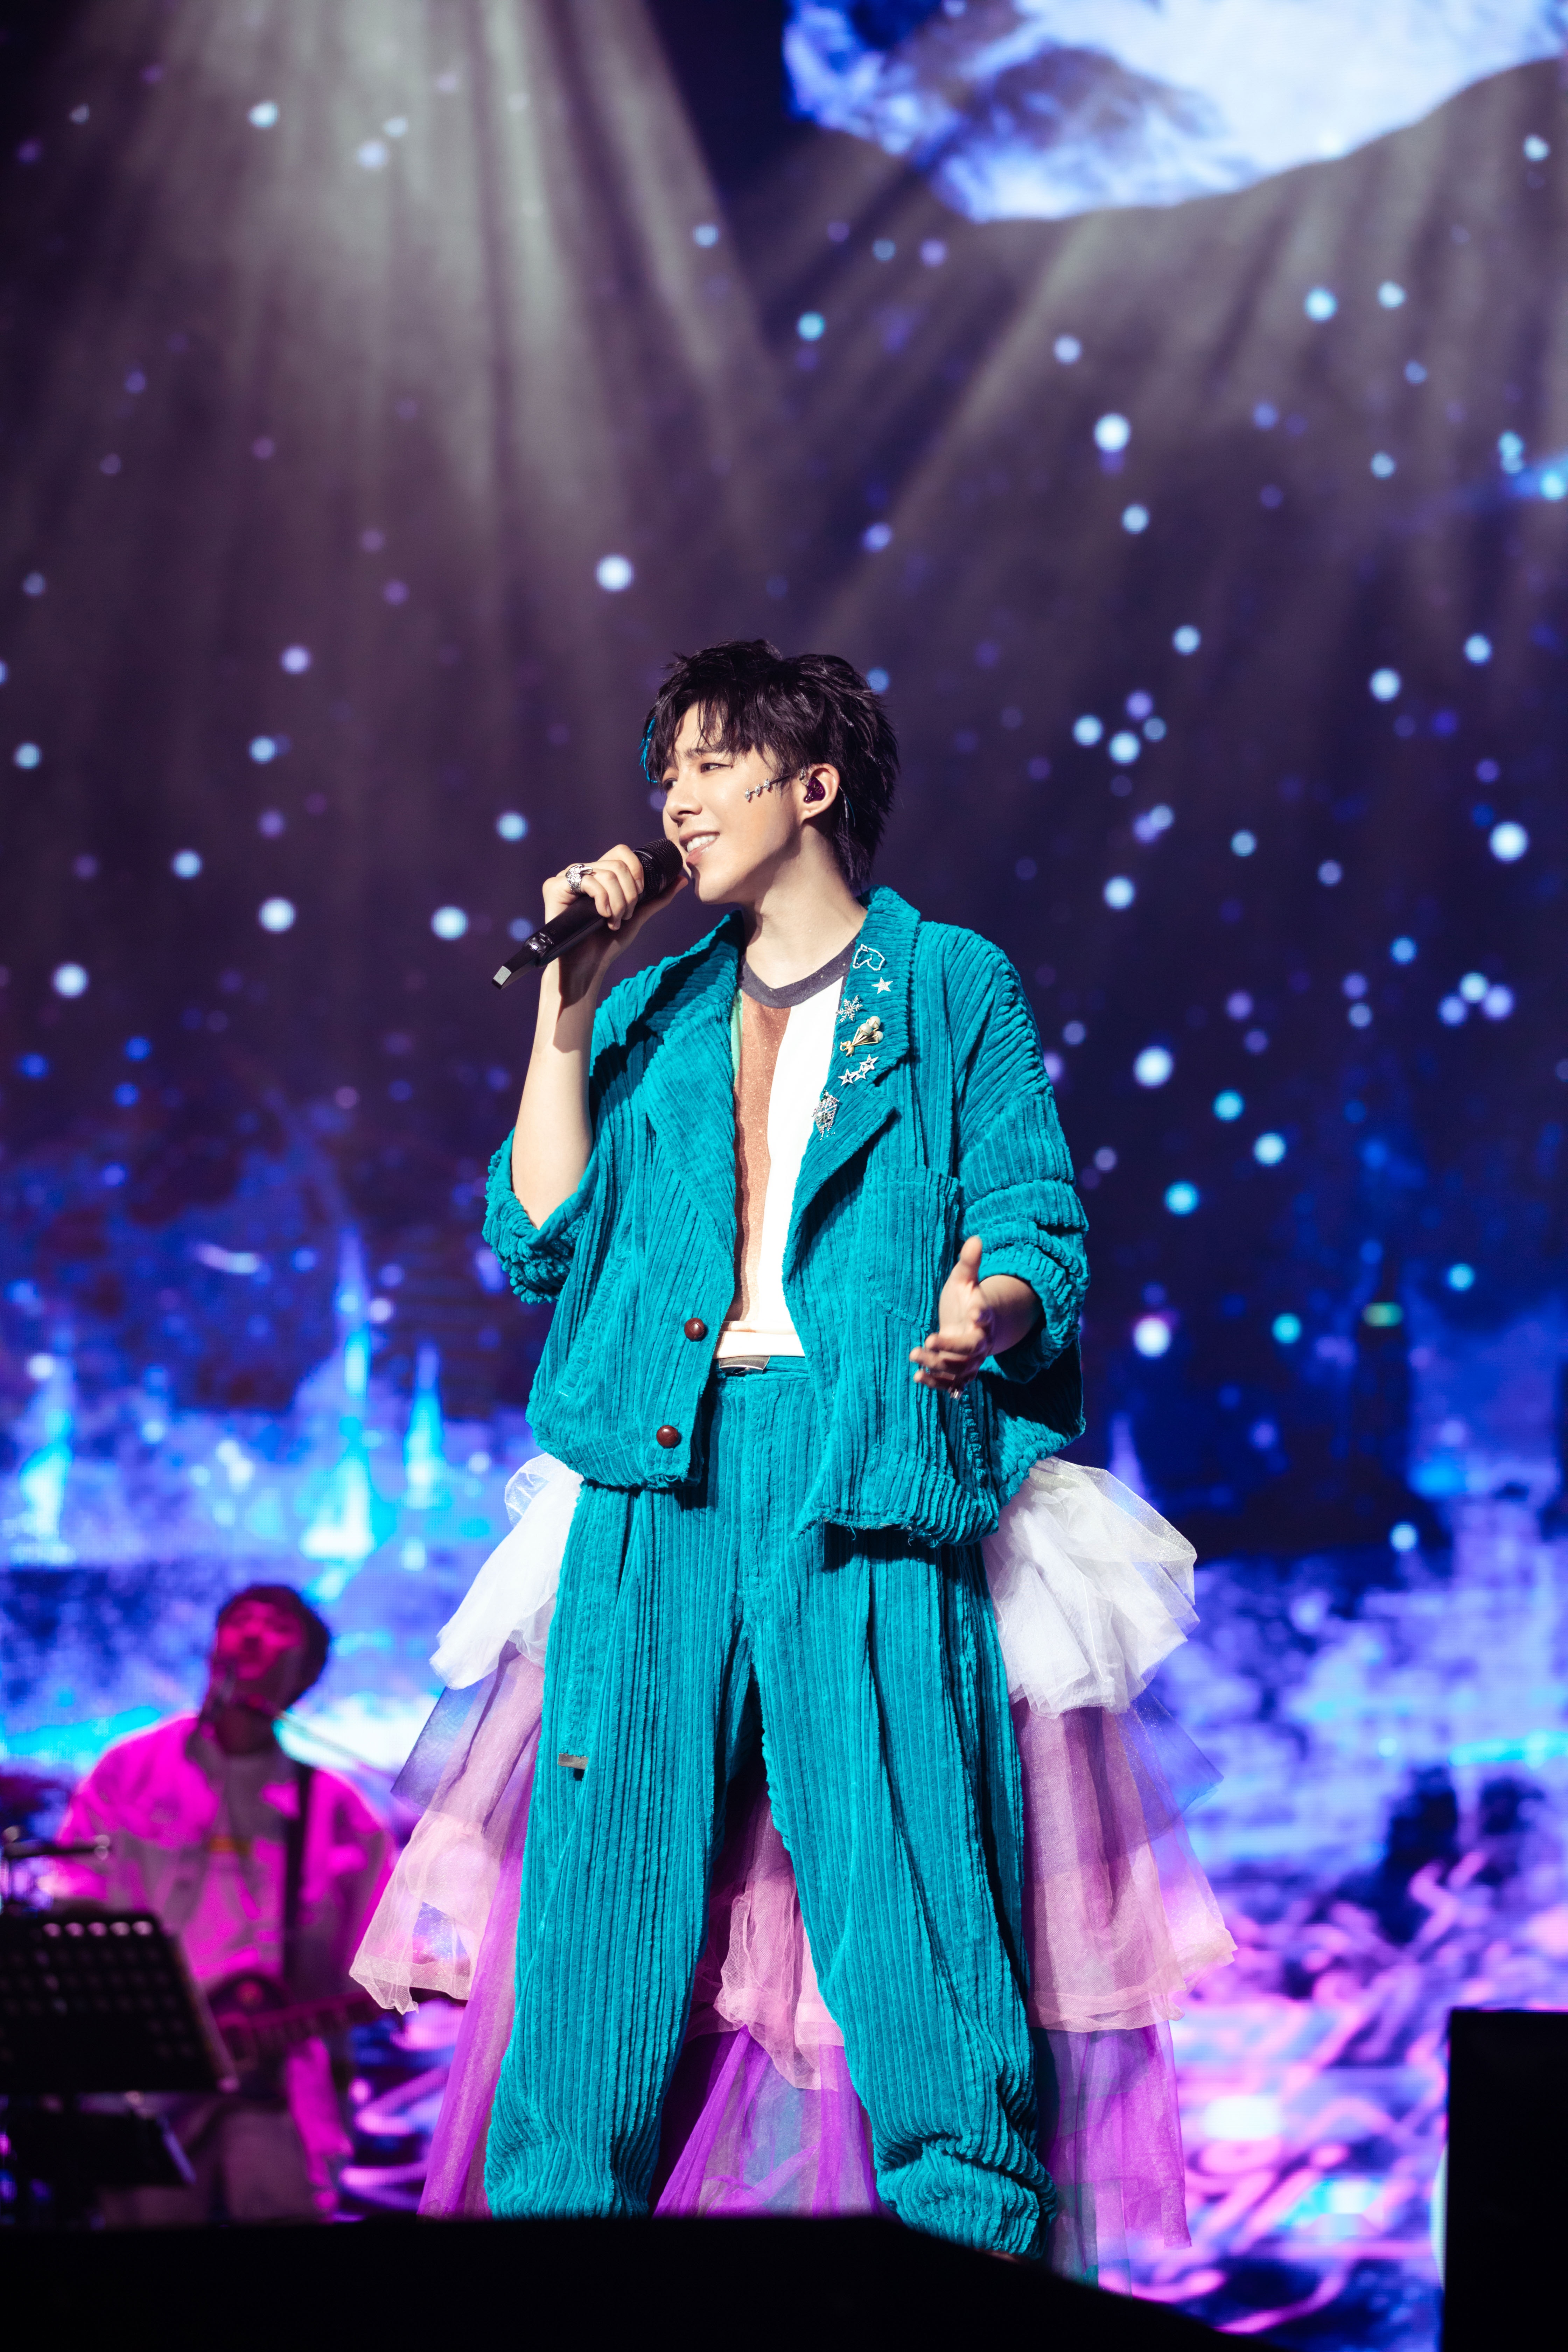 演唱会上,刘宇宁一身彩色婚纱裤造型亮相,据悉这也是为了回馈粉丝在